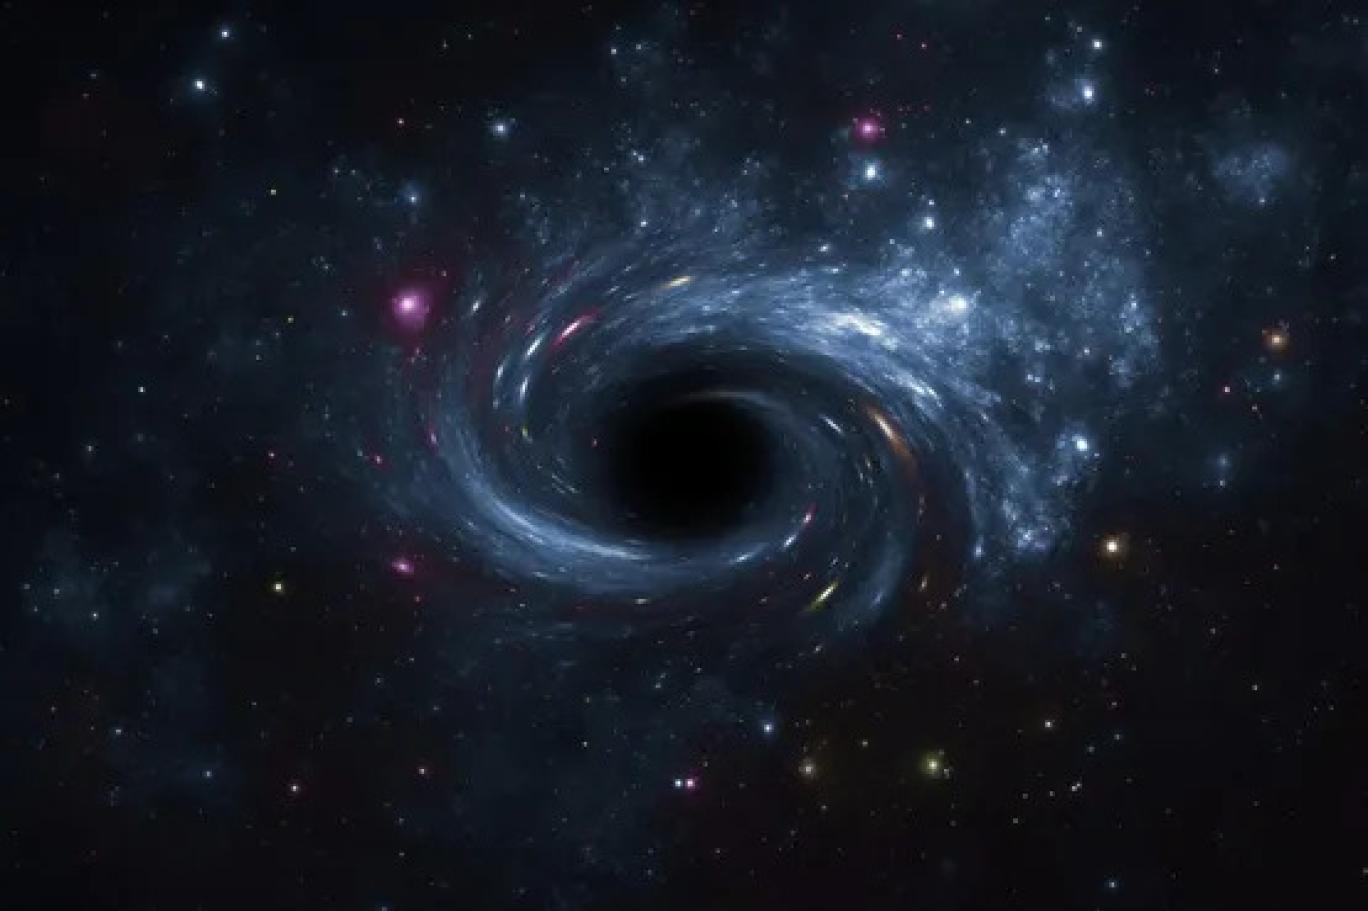 ماذا يمكن أن يحدث للأرض إذا ابتعلها ثقب أسود